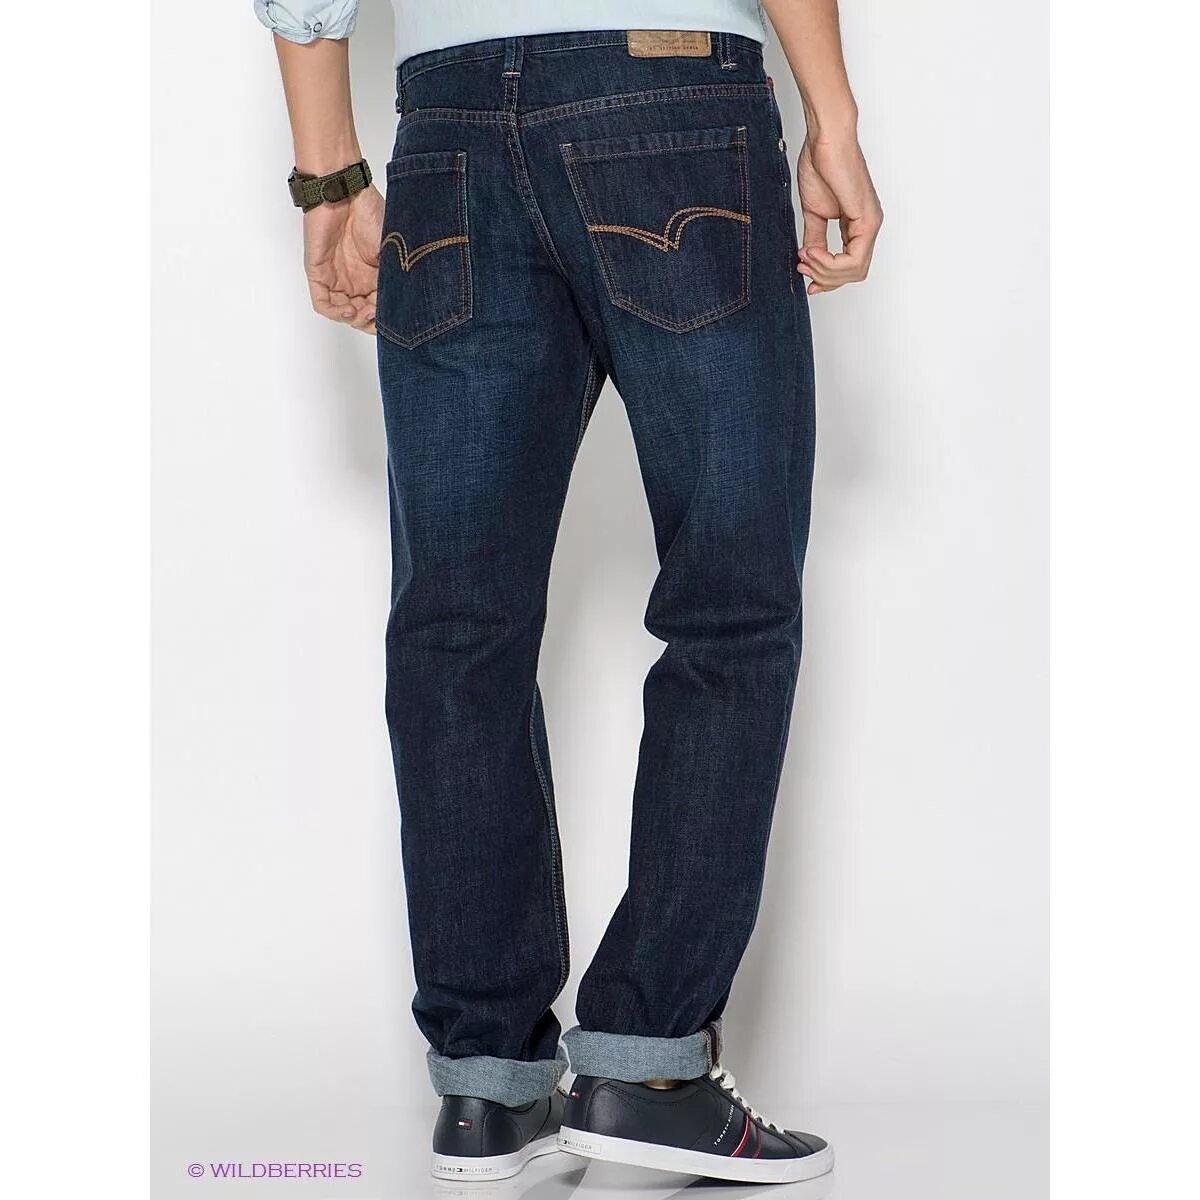 Lee 230 Jeans. Lee Delta джинсы мужские. Джинсы Lee мужские классические. Джинсы Lee мужские широкие. Джинсы мужские больших размеров купить в москве